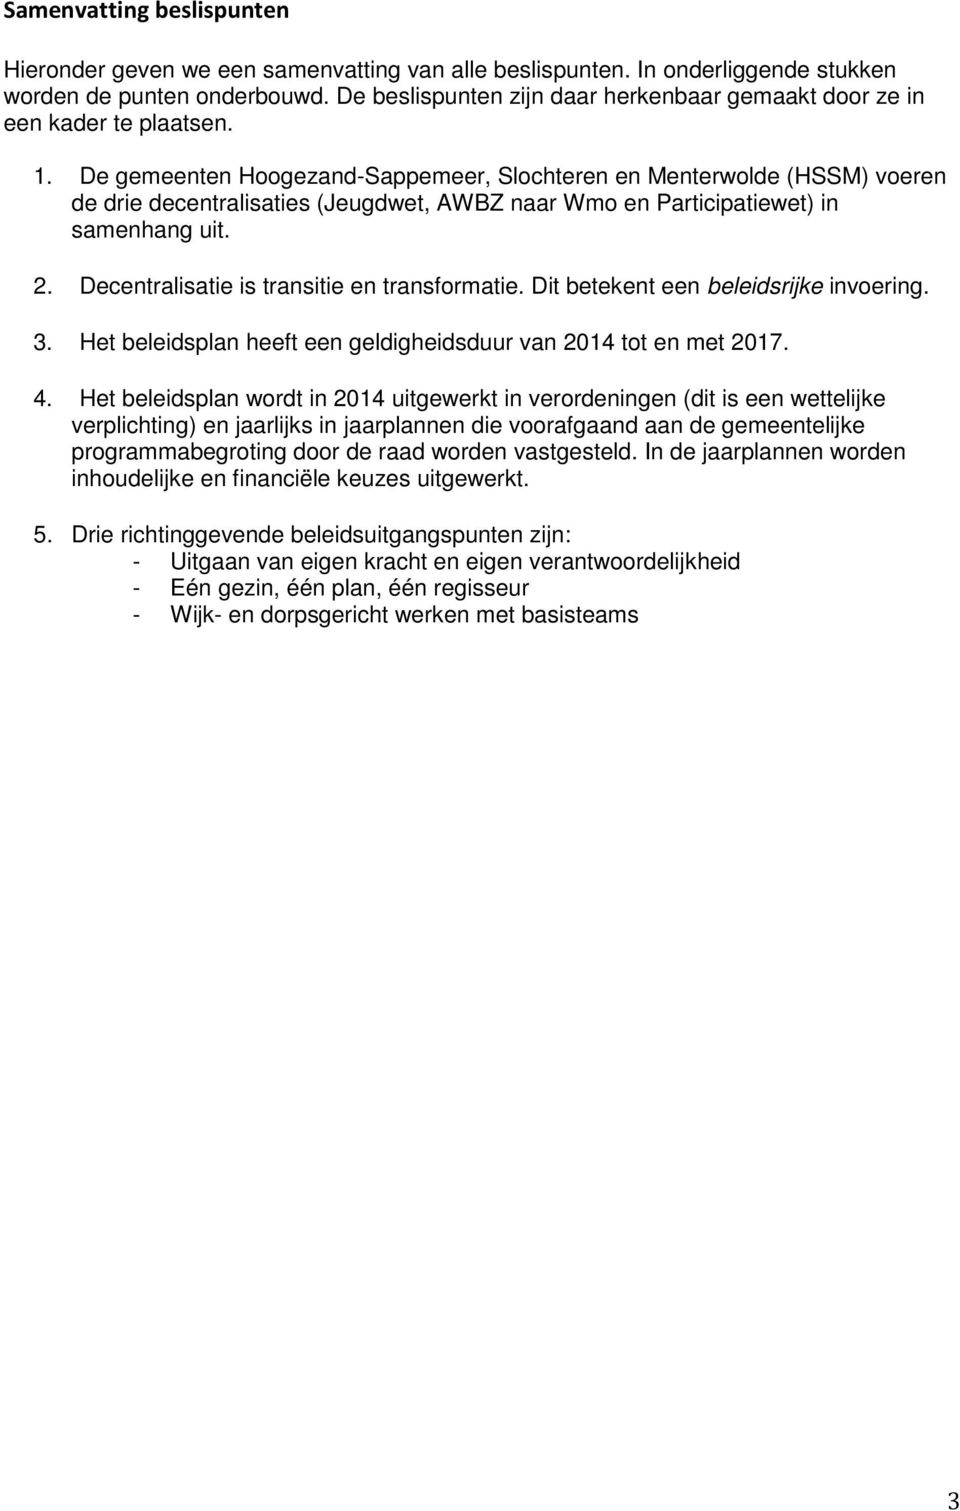 De gemeenten Hoogezand-Sappemeer, Slochteren en Menterwolde (HSSM) voeren de drie decentralisaties (Jeugdwet, AWBZ naar Wmo en Participatiewet) in samenhang uit. 2.